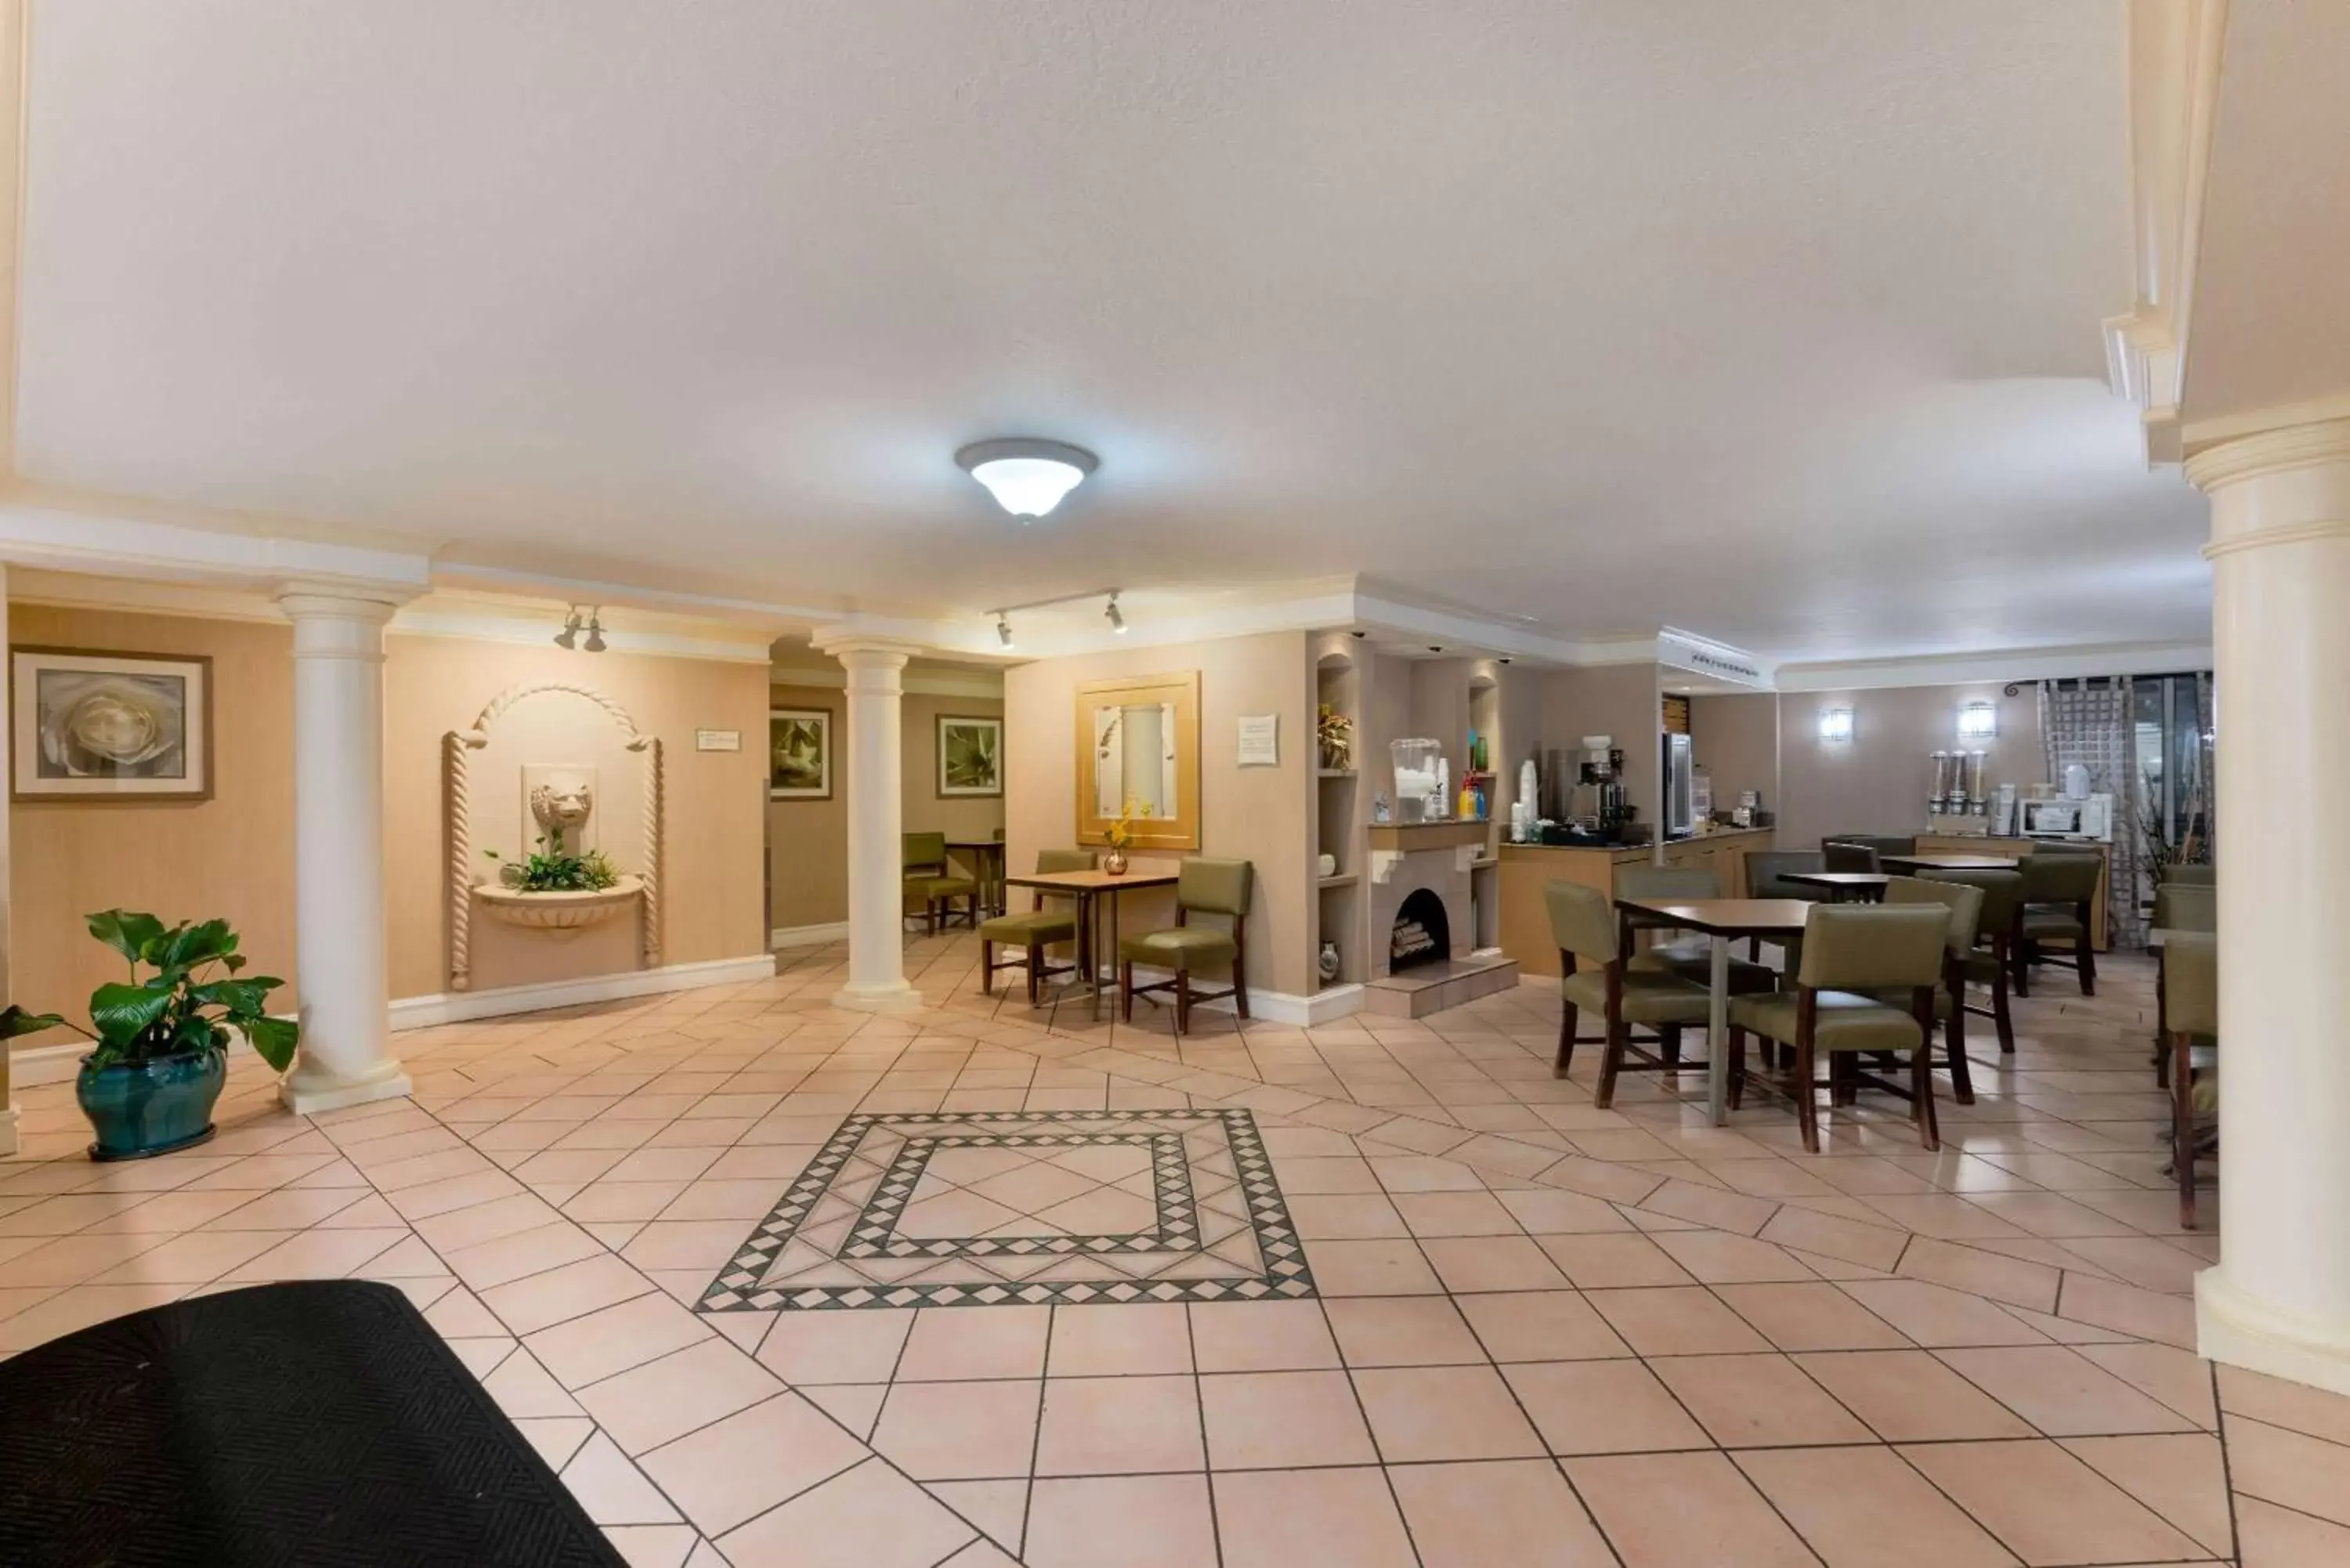 Lobby or reception in La Quinta Inn by Wyndham Cheyenne